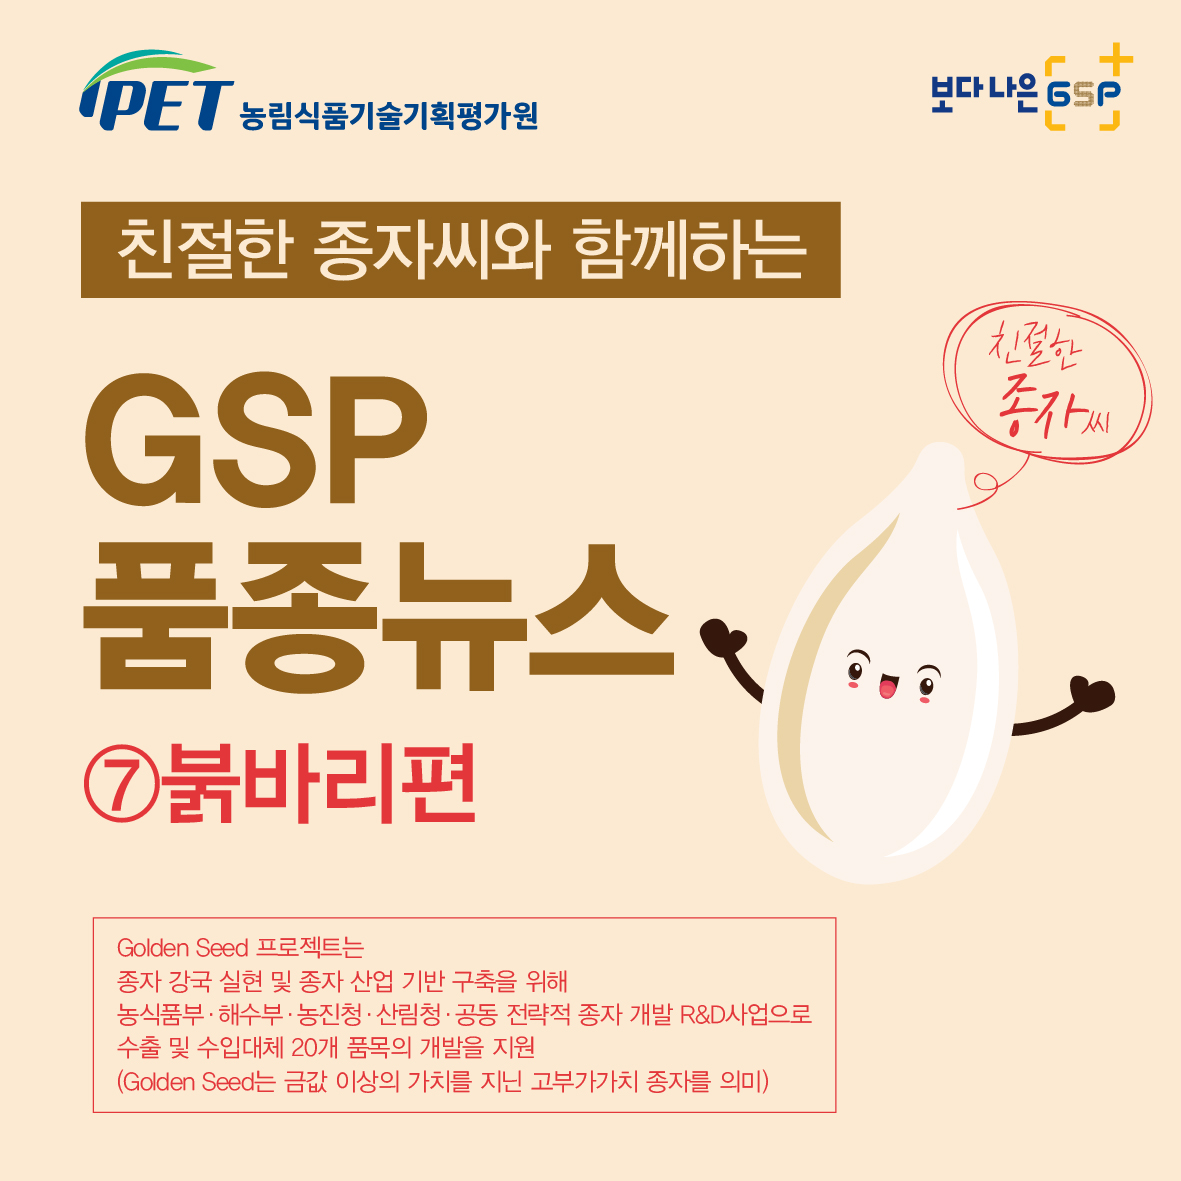 친절한 종자씨와 함께하는 GSP 품종뉴스 - 붉바리편 카드뉴스_붉바리편-01.jpg